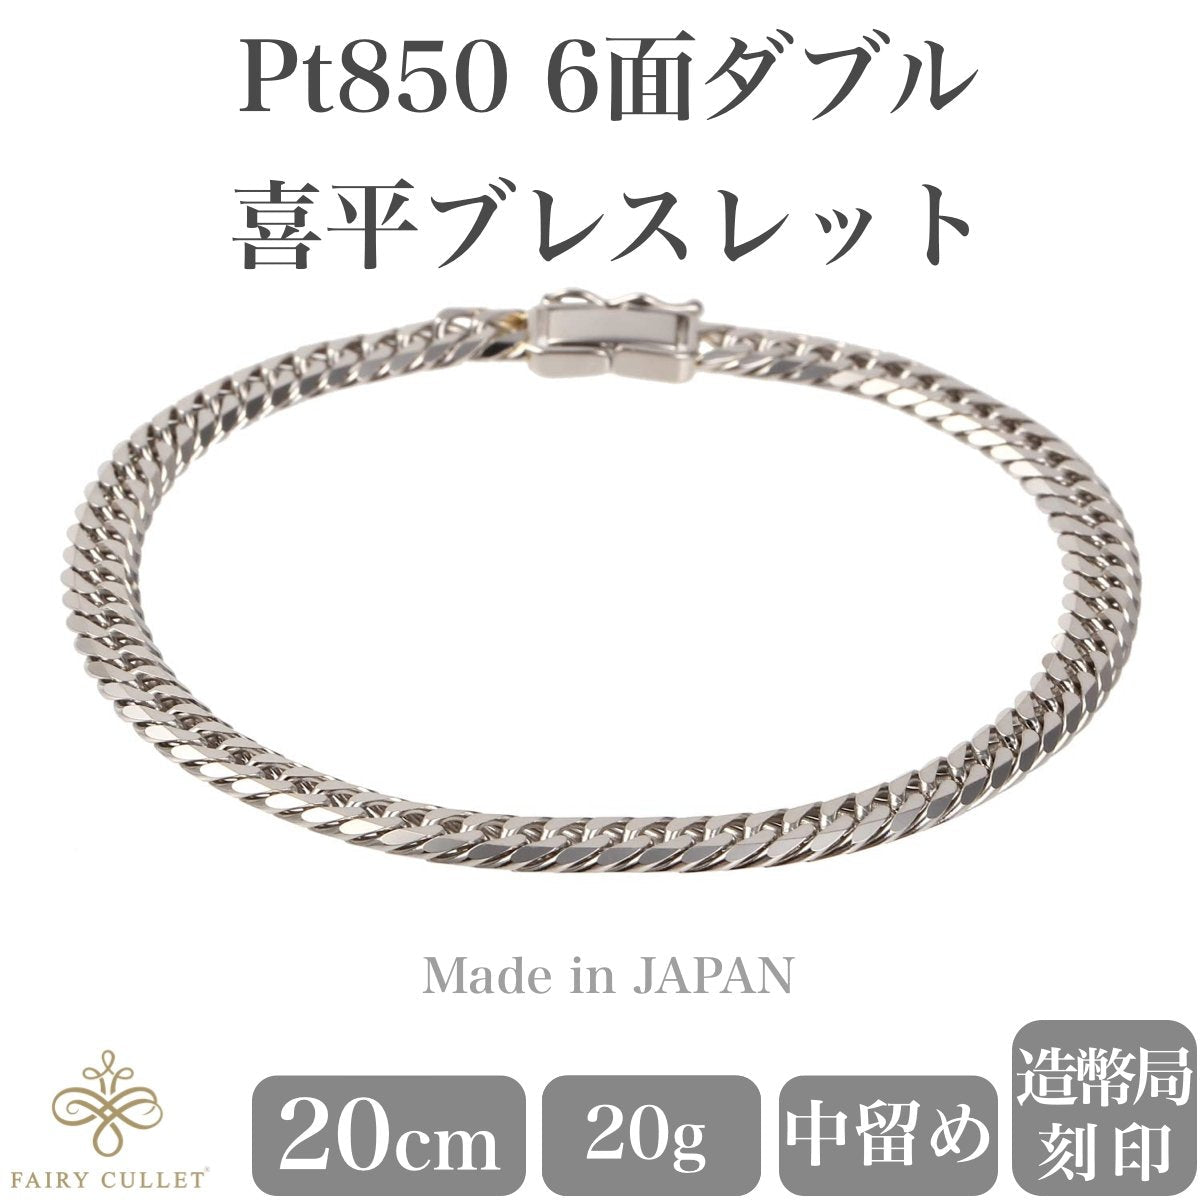 プラチナブレスレット Pt850 6面W喜平チェーン 日本製 検定印 20g 20cm 